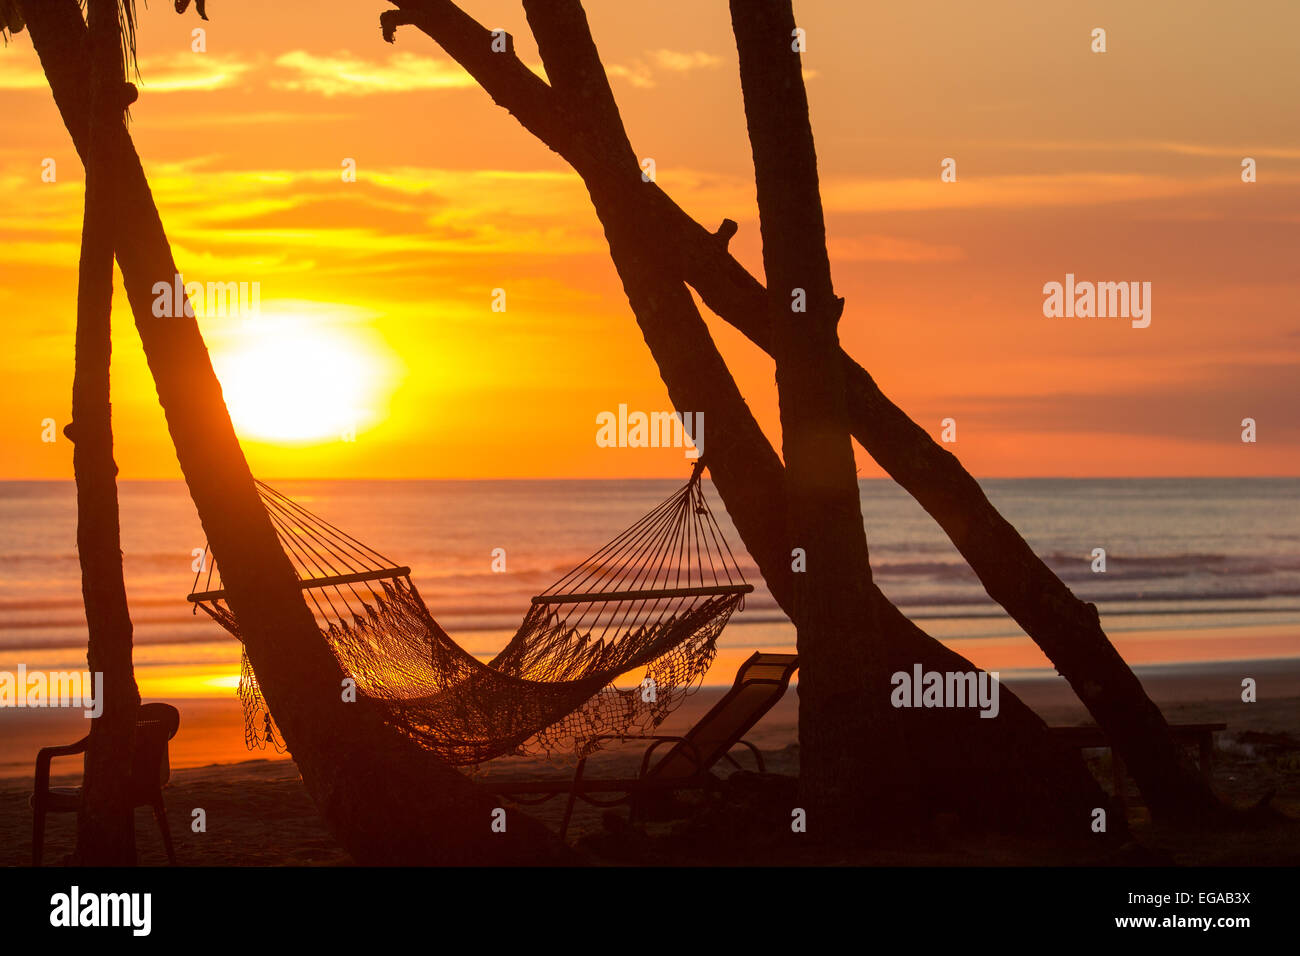 Sunset on beach with hammock Stock Photo